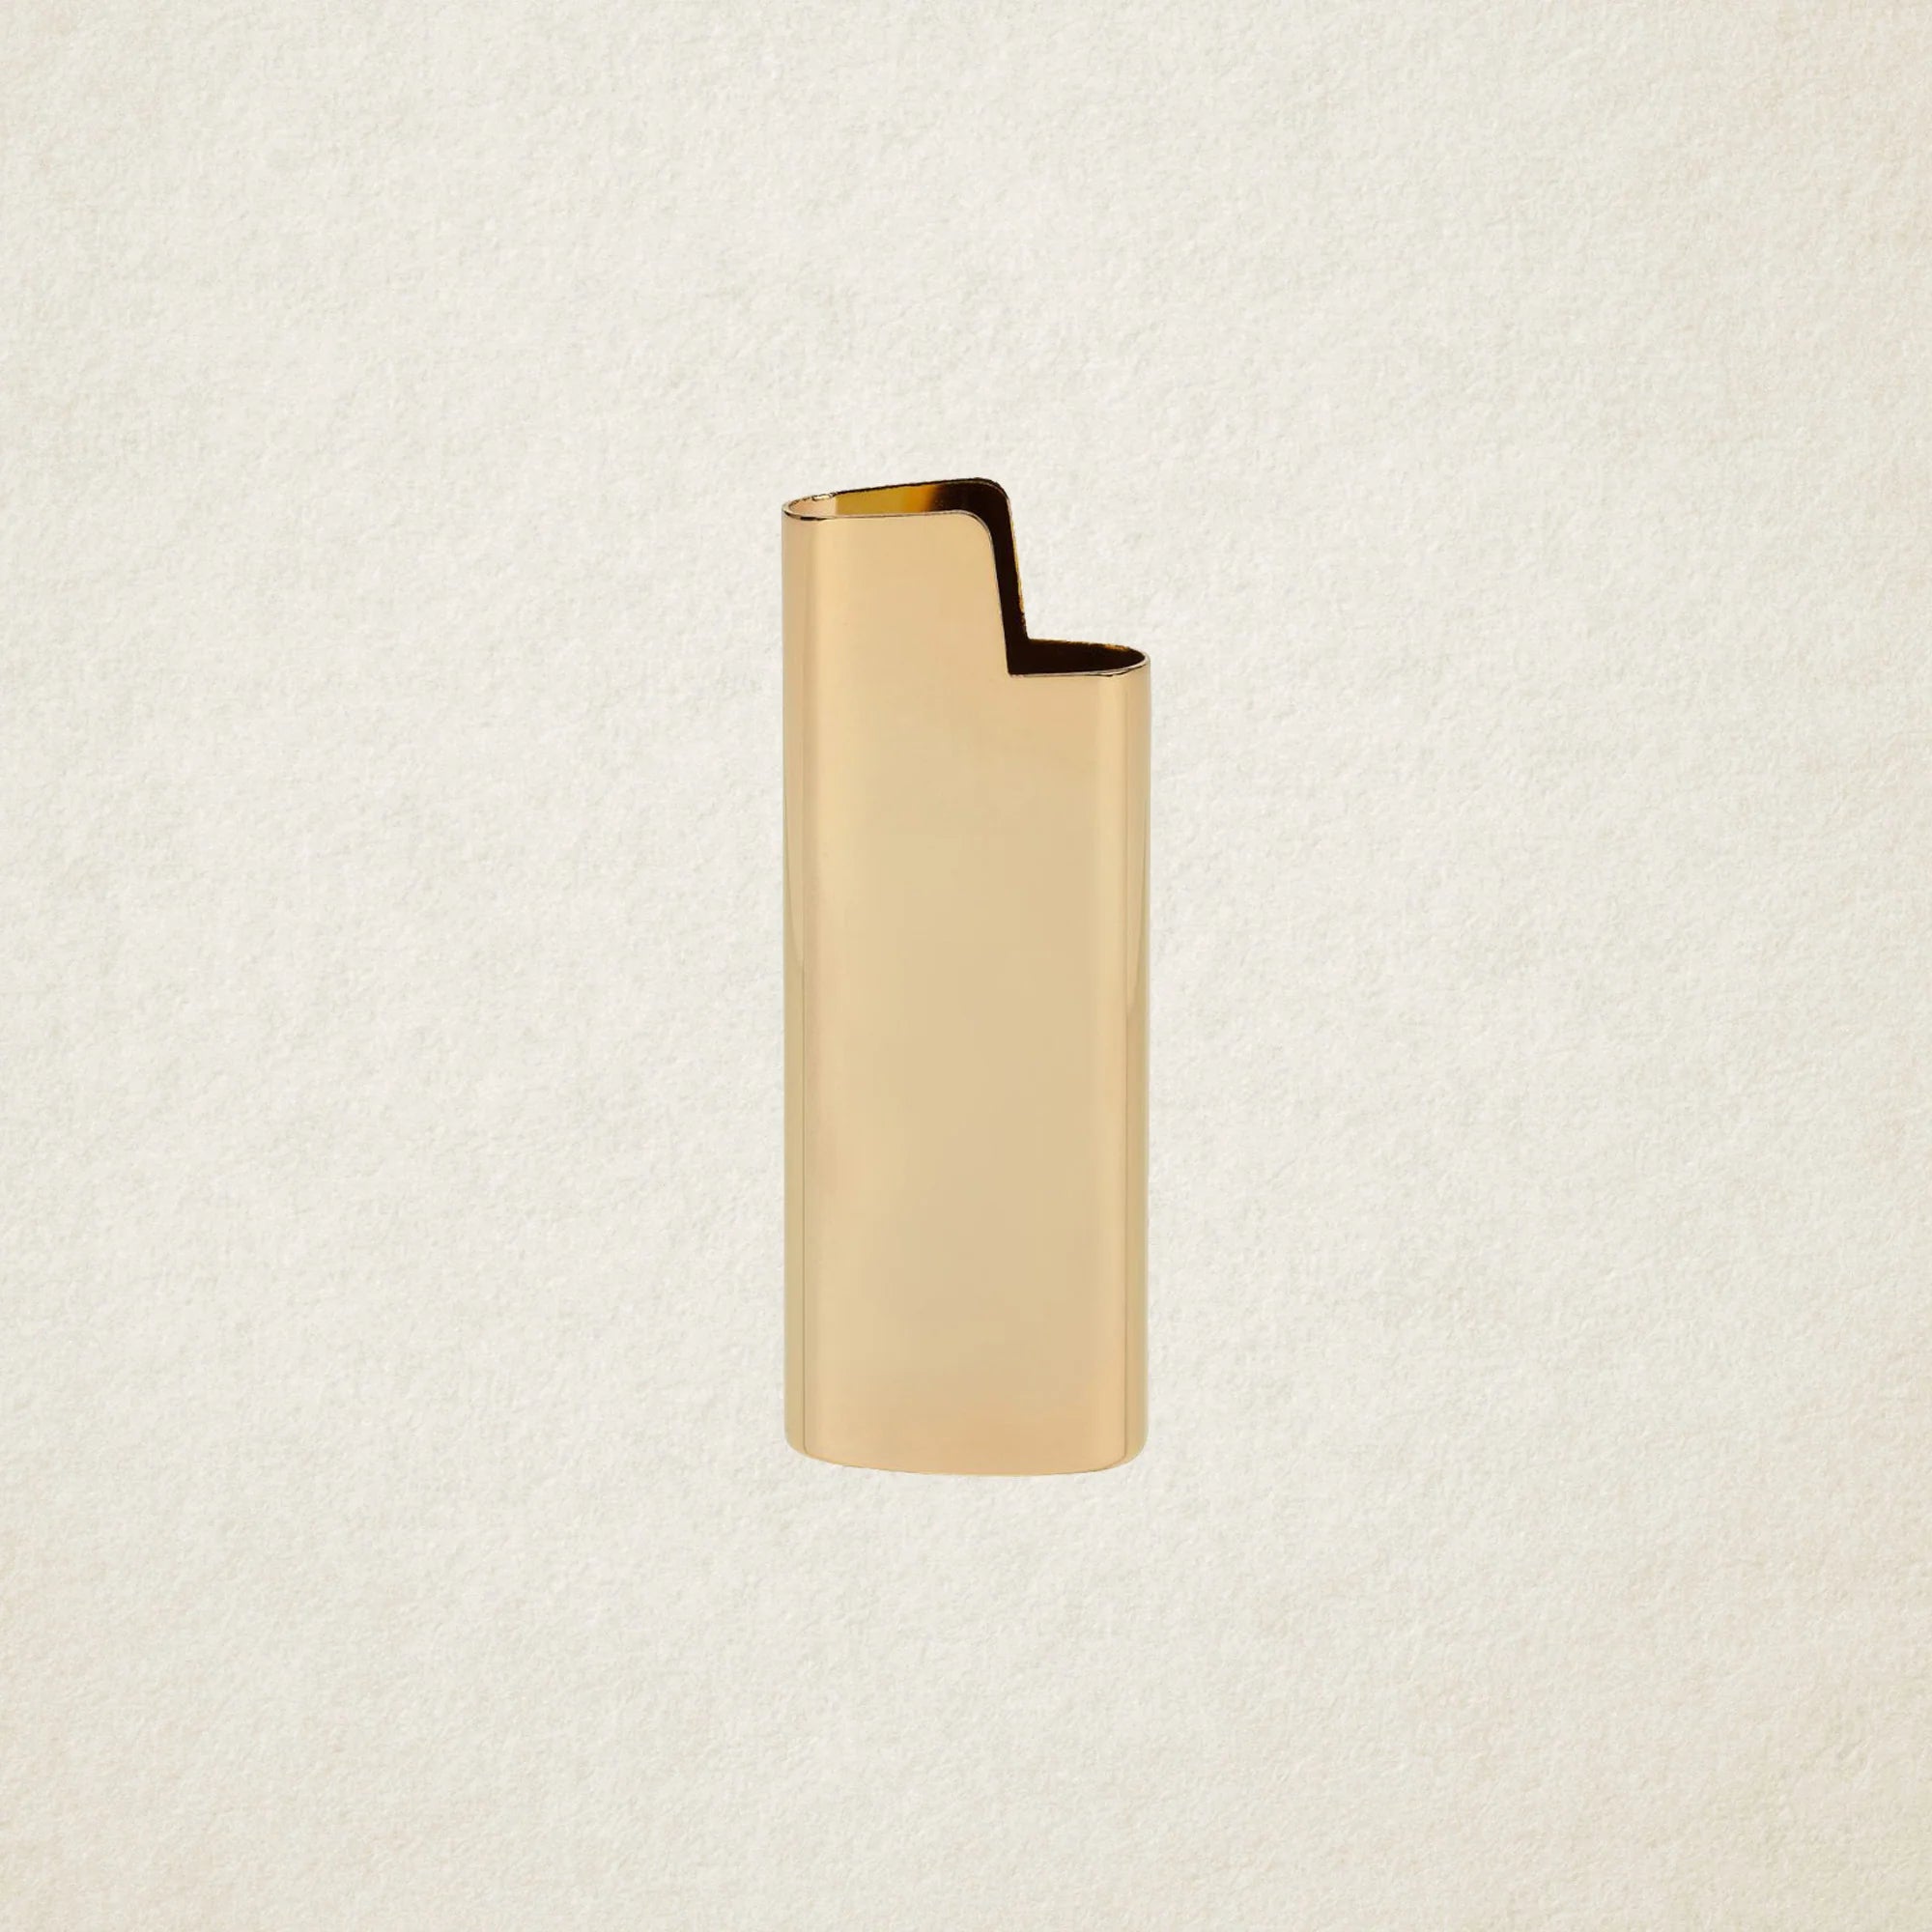 gold brass lighter holder